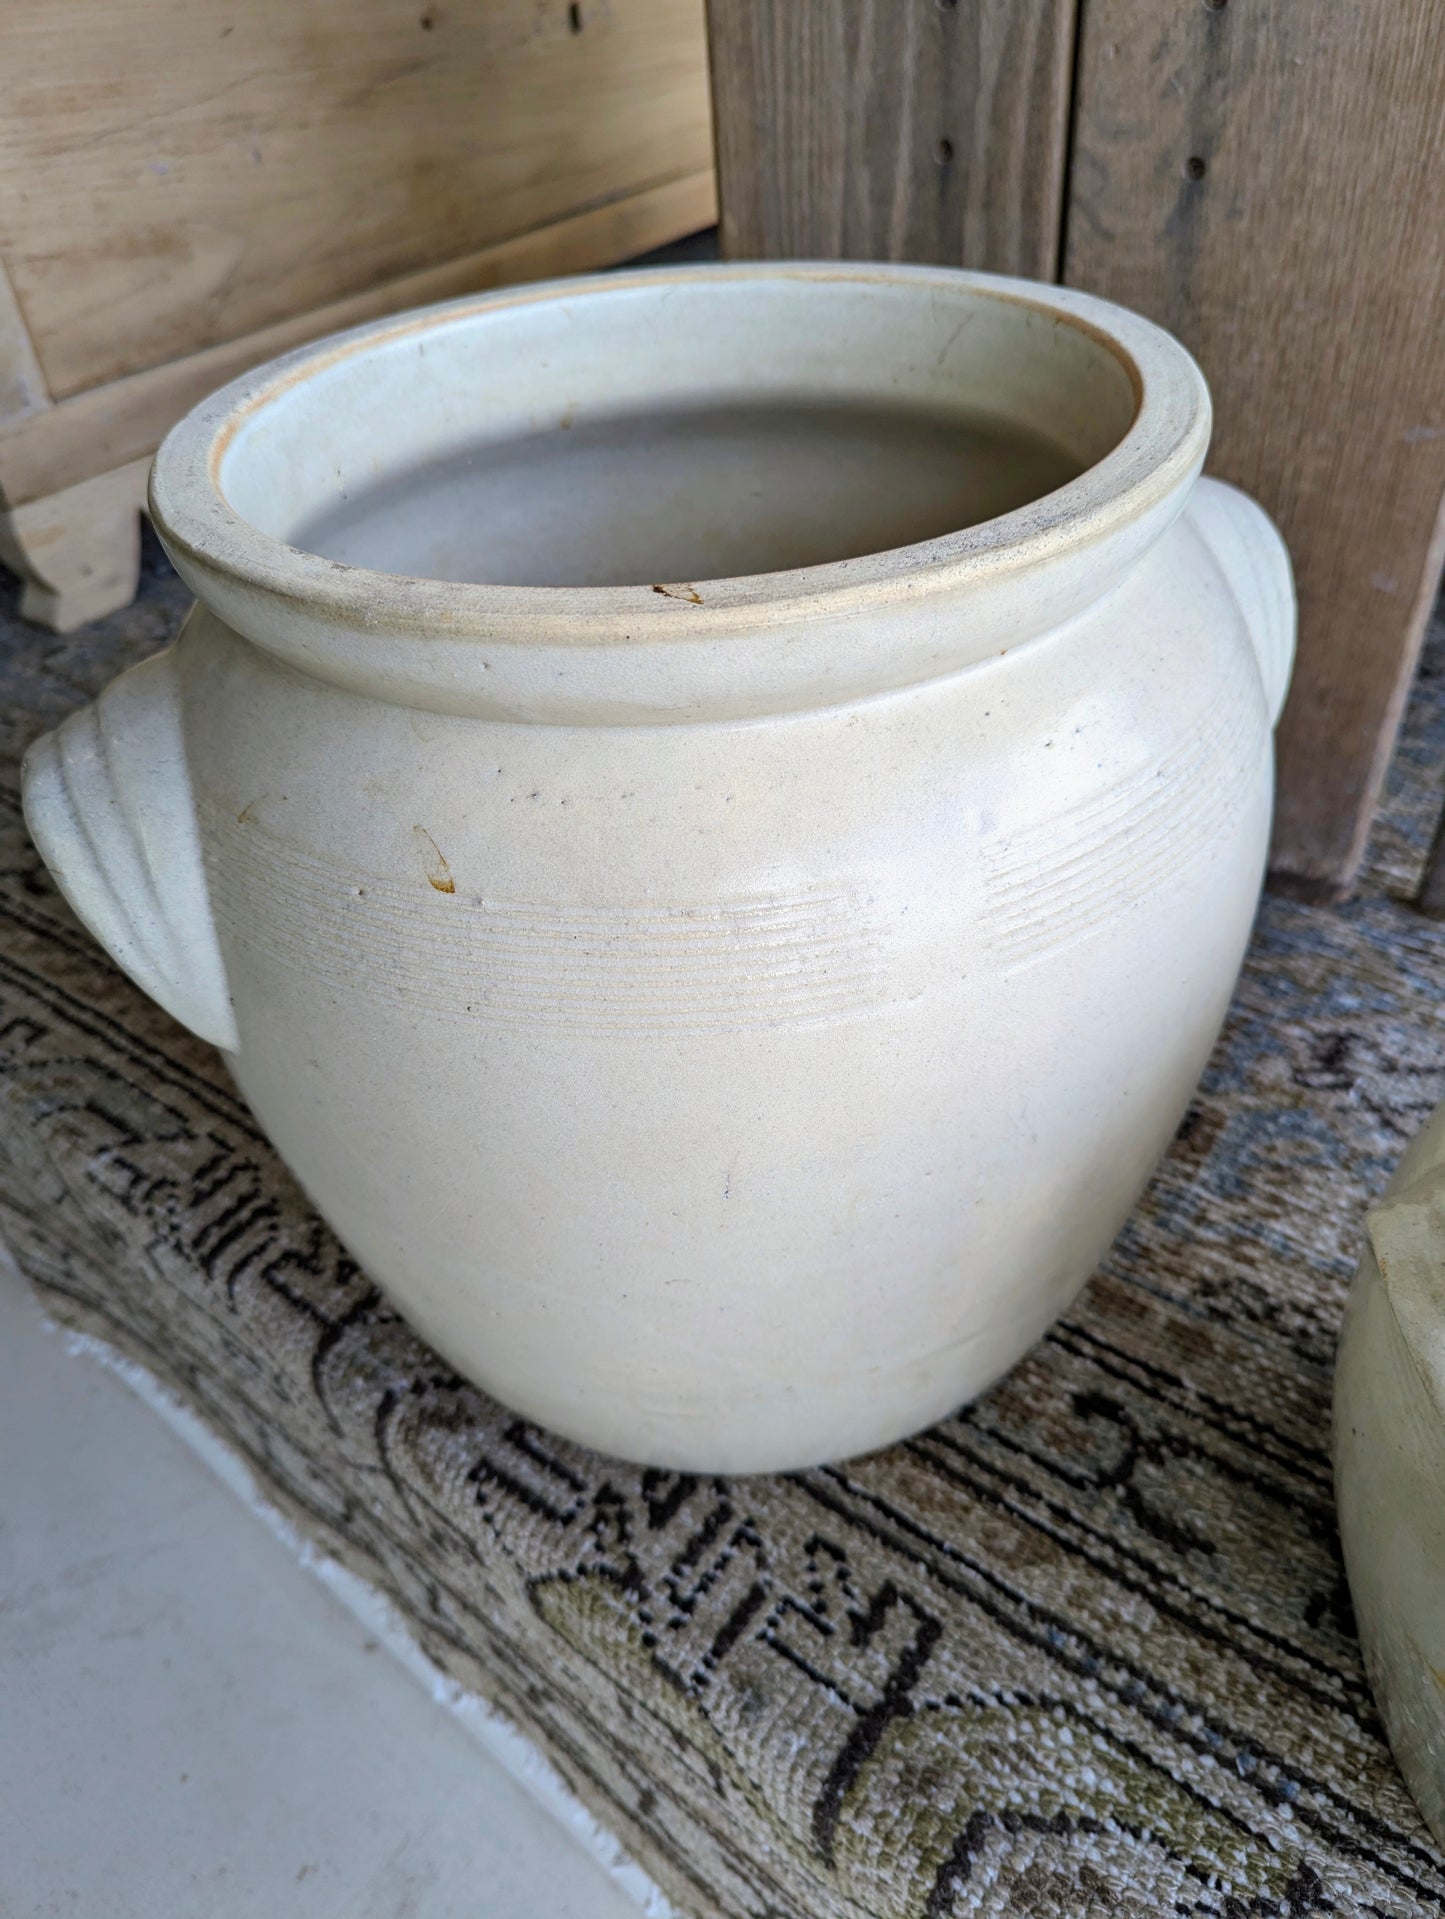 Two creamy coloured ceramic pots.